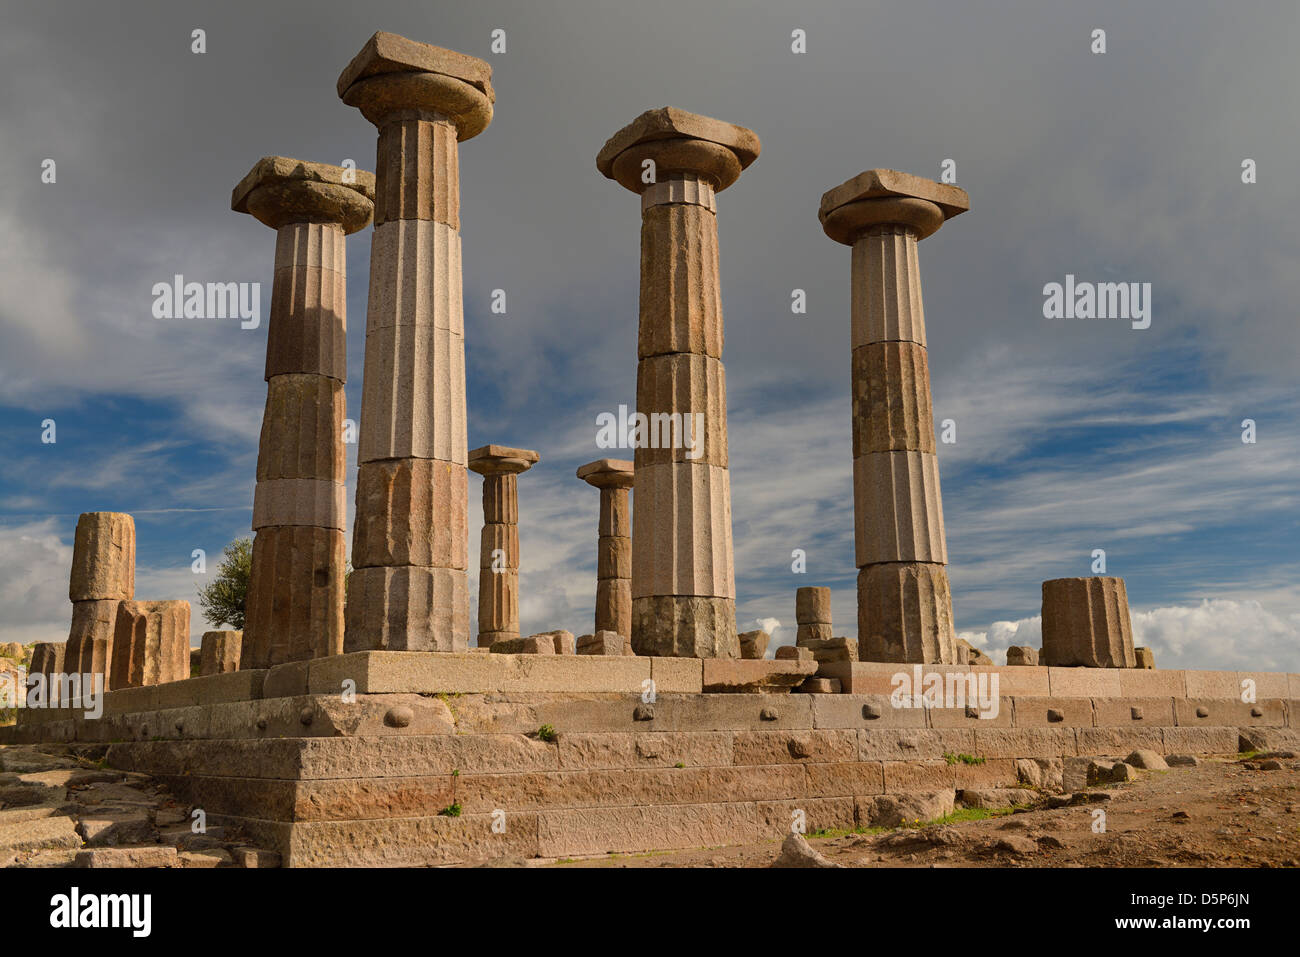 Colonne dorique de ruines du temple d'Athéna d'Assos behramkale turquie Banque D'Images